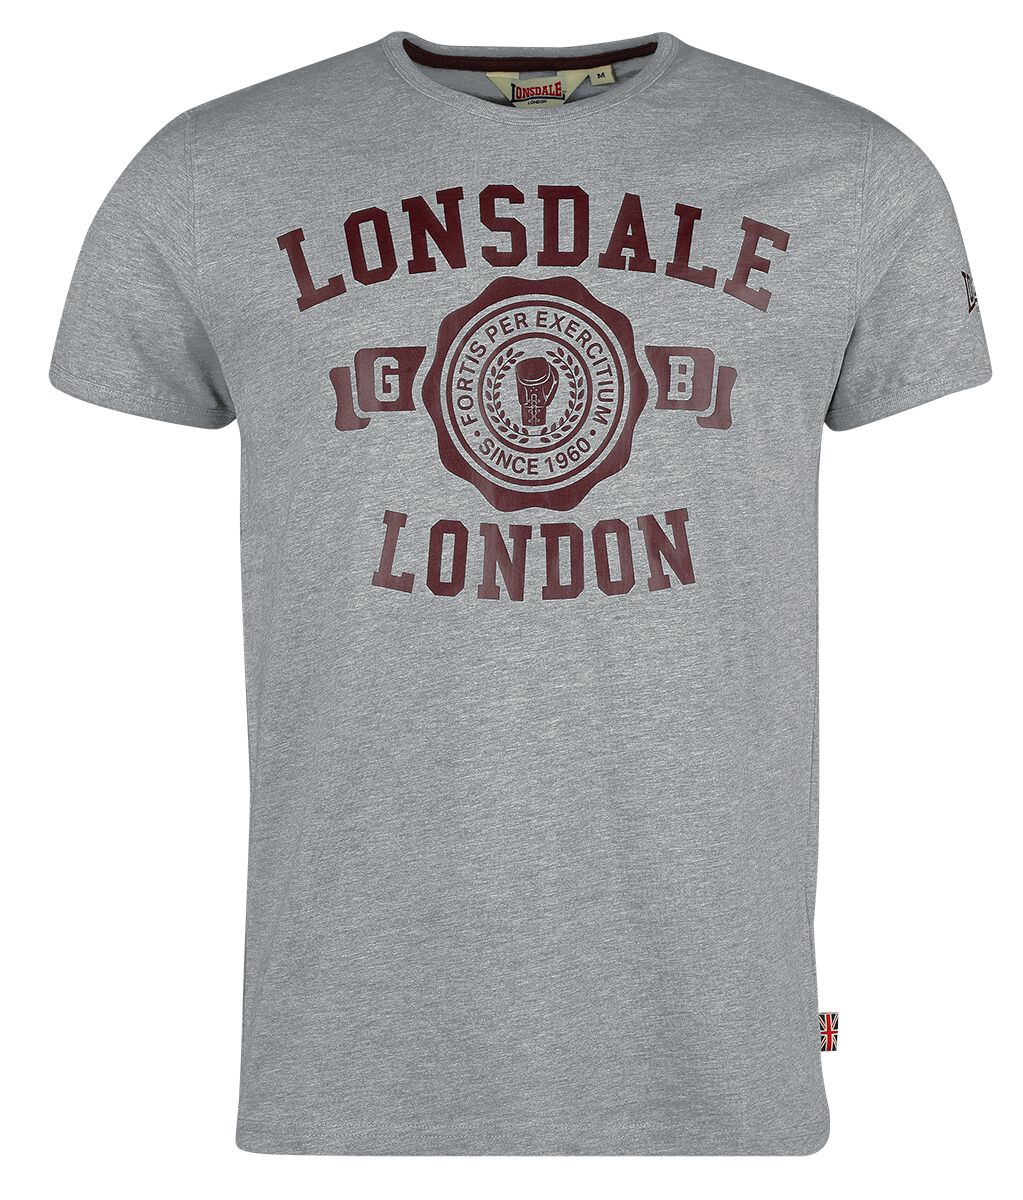 Lonsdale London T-Shirt - MURRISTER - S bis XXL - für Männer - Größe S - grau meliert von Lonsdale London